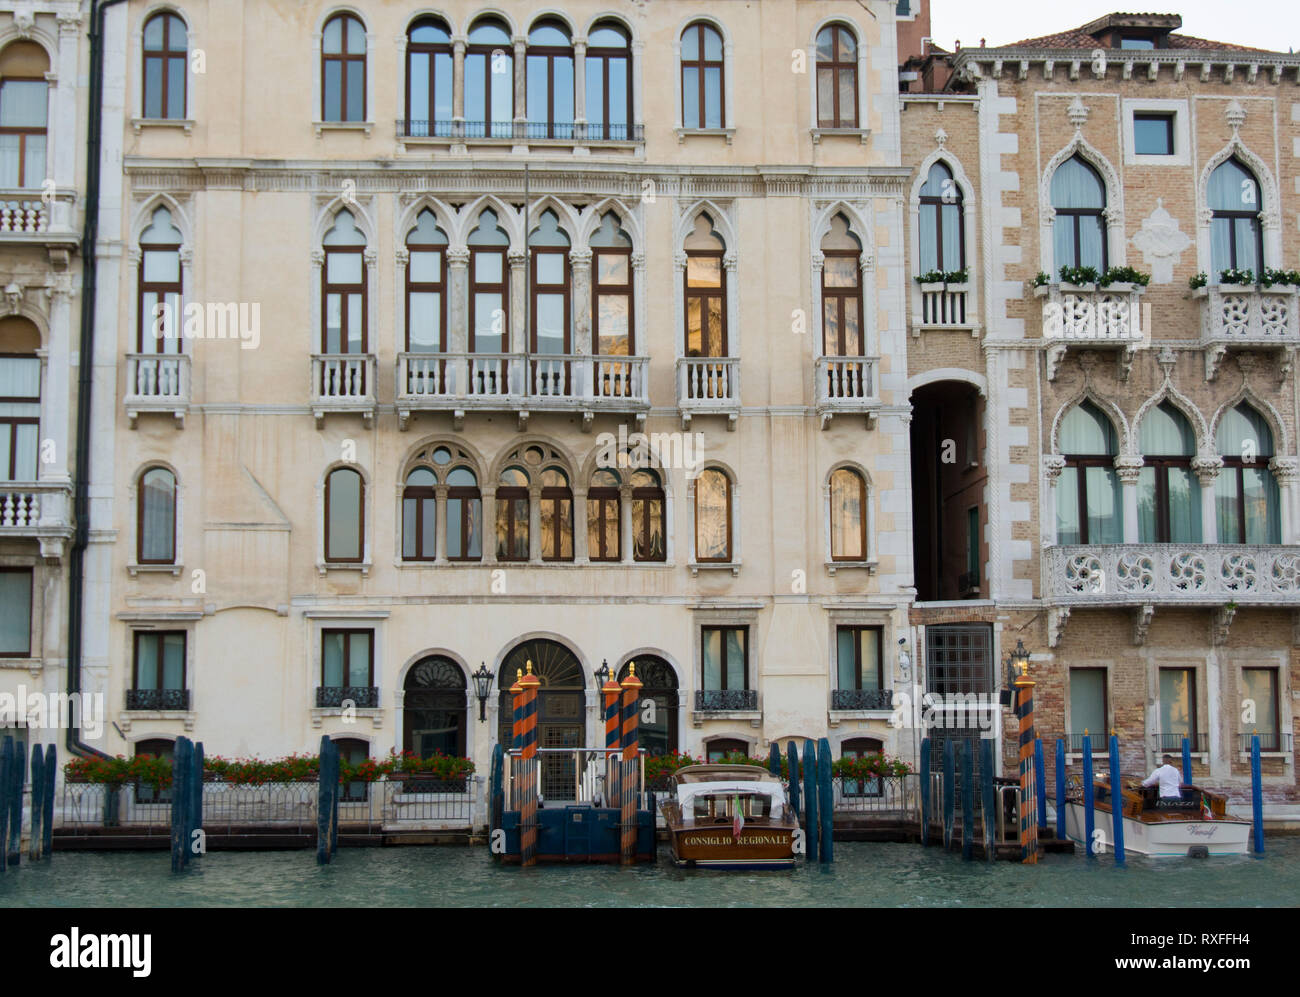 Les taxis de l'eau dans le Grand Canal, Venise, Italie Banque D'Images